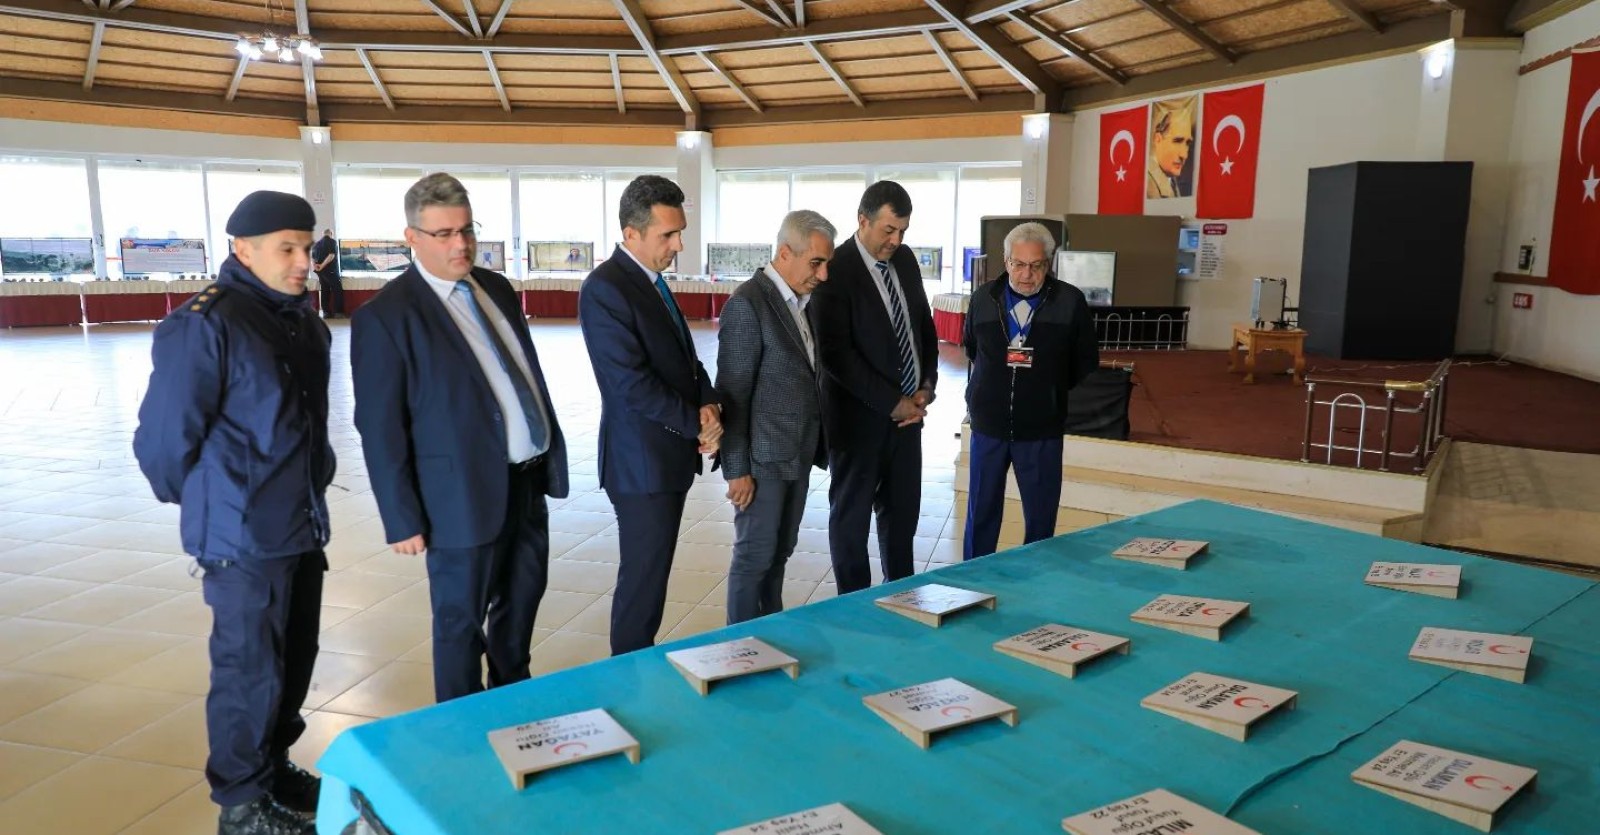 Çanakkale Savaşı'nda kullanılan malzemelerin sergilendiği "Çanakkale Gezici Müzesi" Dalaman Kültür Merkezi’nde ziyarete açıldı.